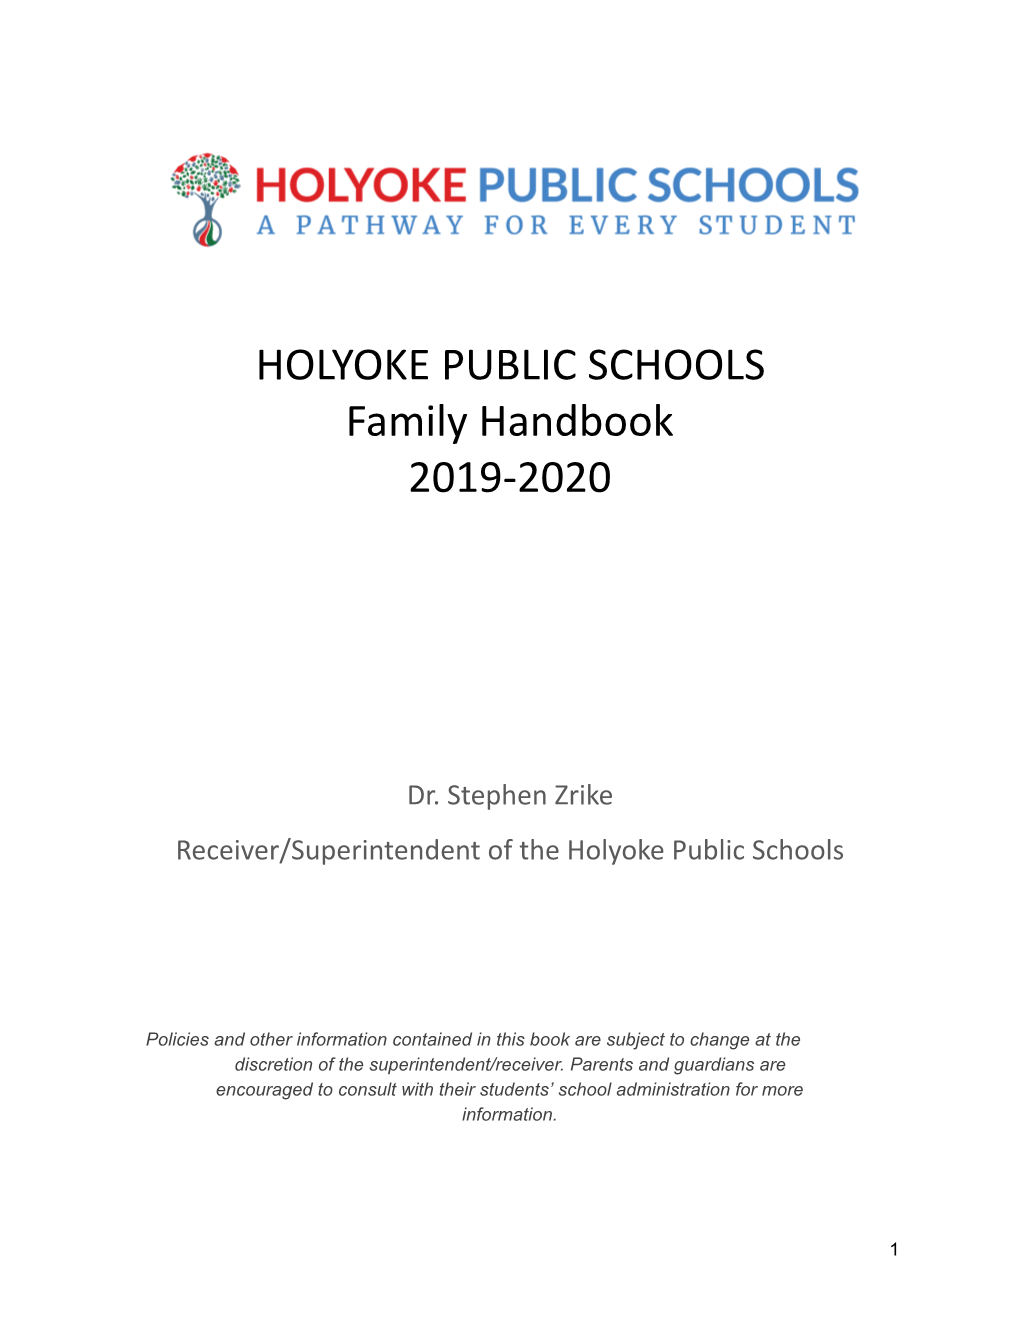 HOLYOKE PUBLIC SCHOOLS Family Handbook 2019-2020